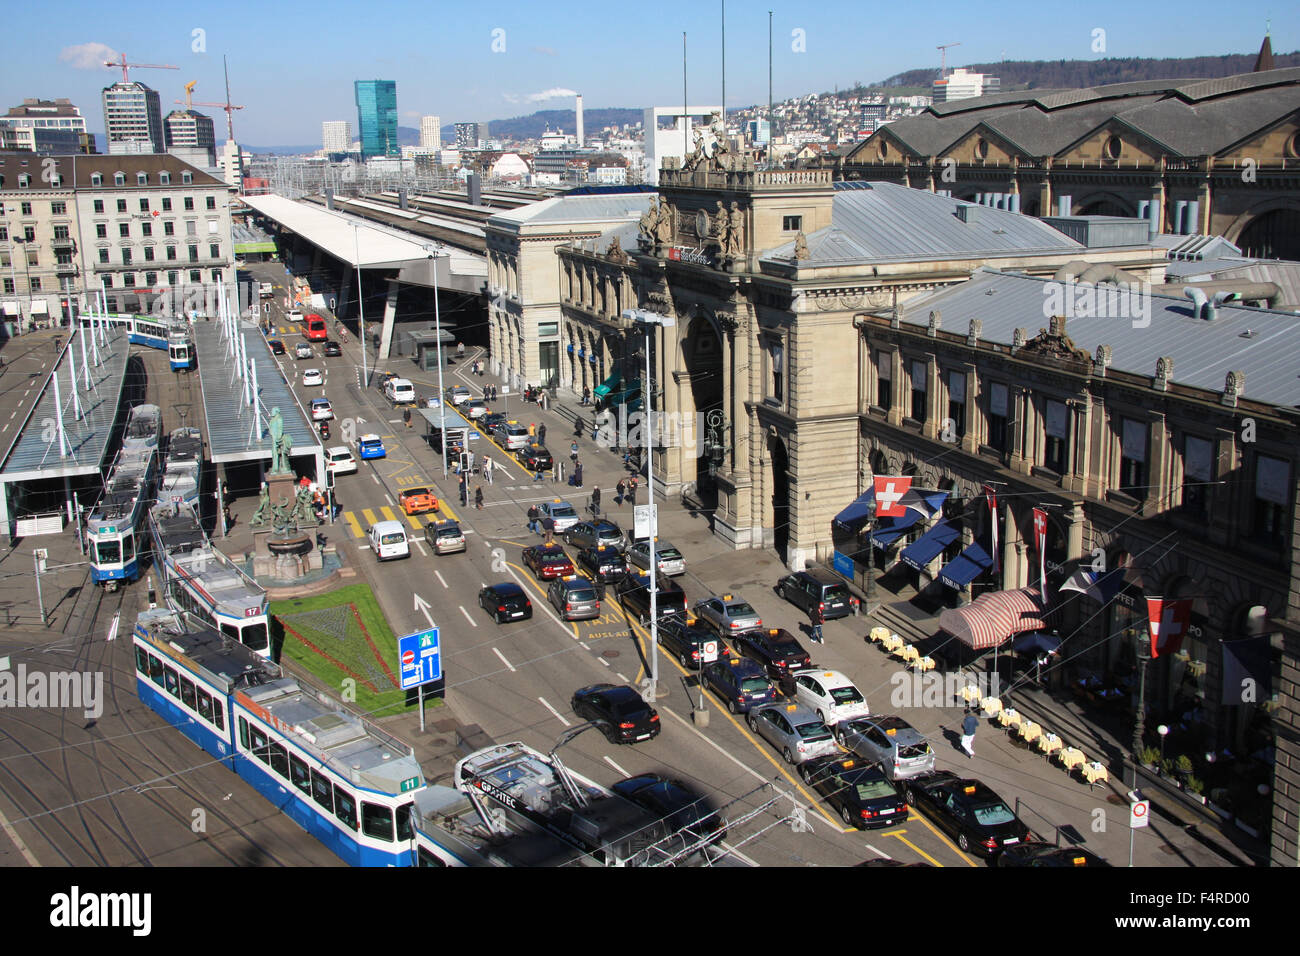 Zurich, Switzerland, Europe, Bahnhofplatz, central station, railway station, Escher, Alfred Escher, statue, tram, streetcar, tra Stock Photo